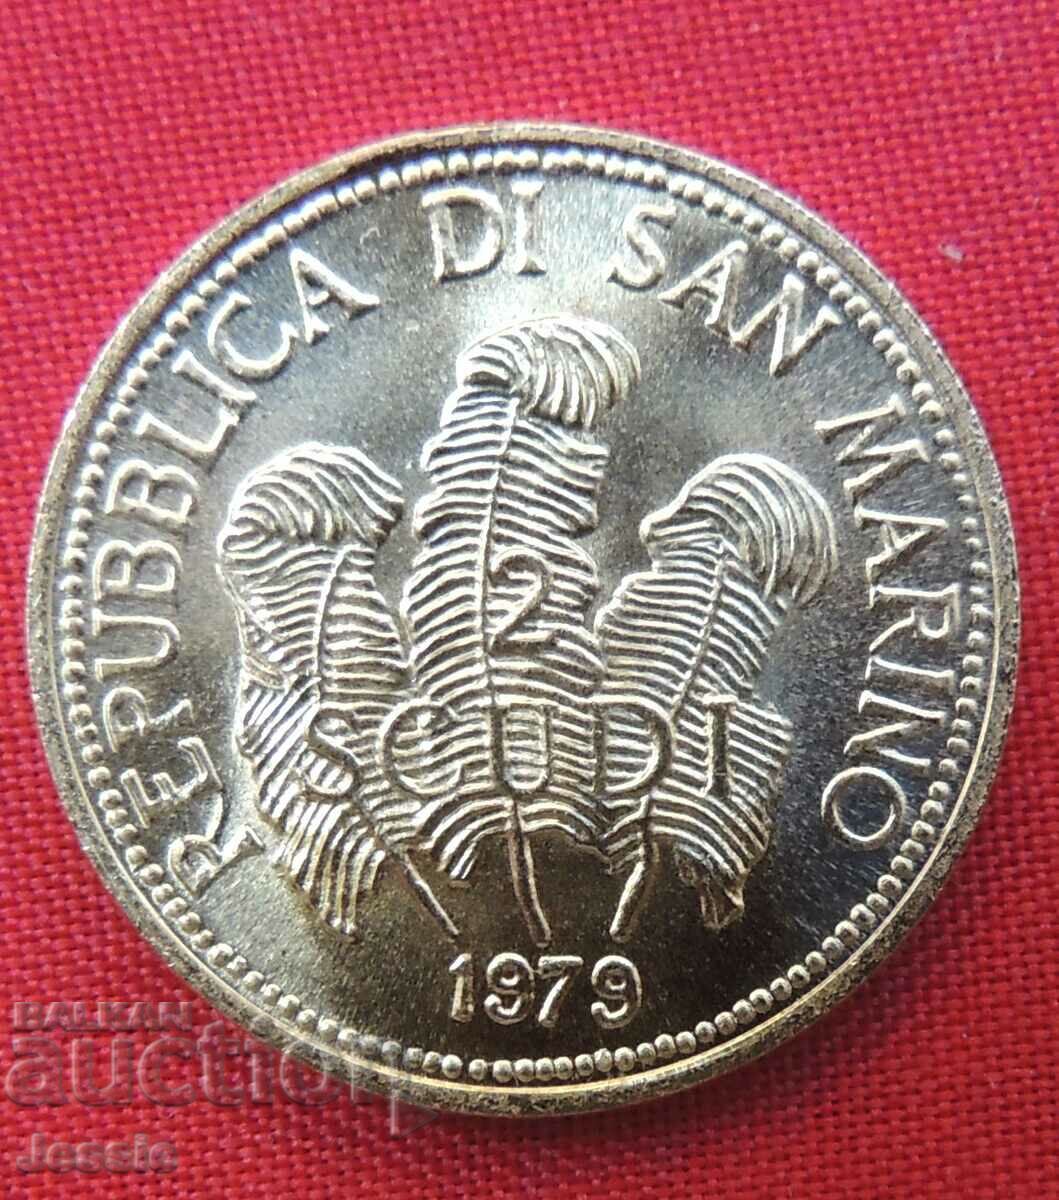 2 Scudi 1979 Republica di San Marino (χρυσός) UNC